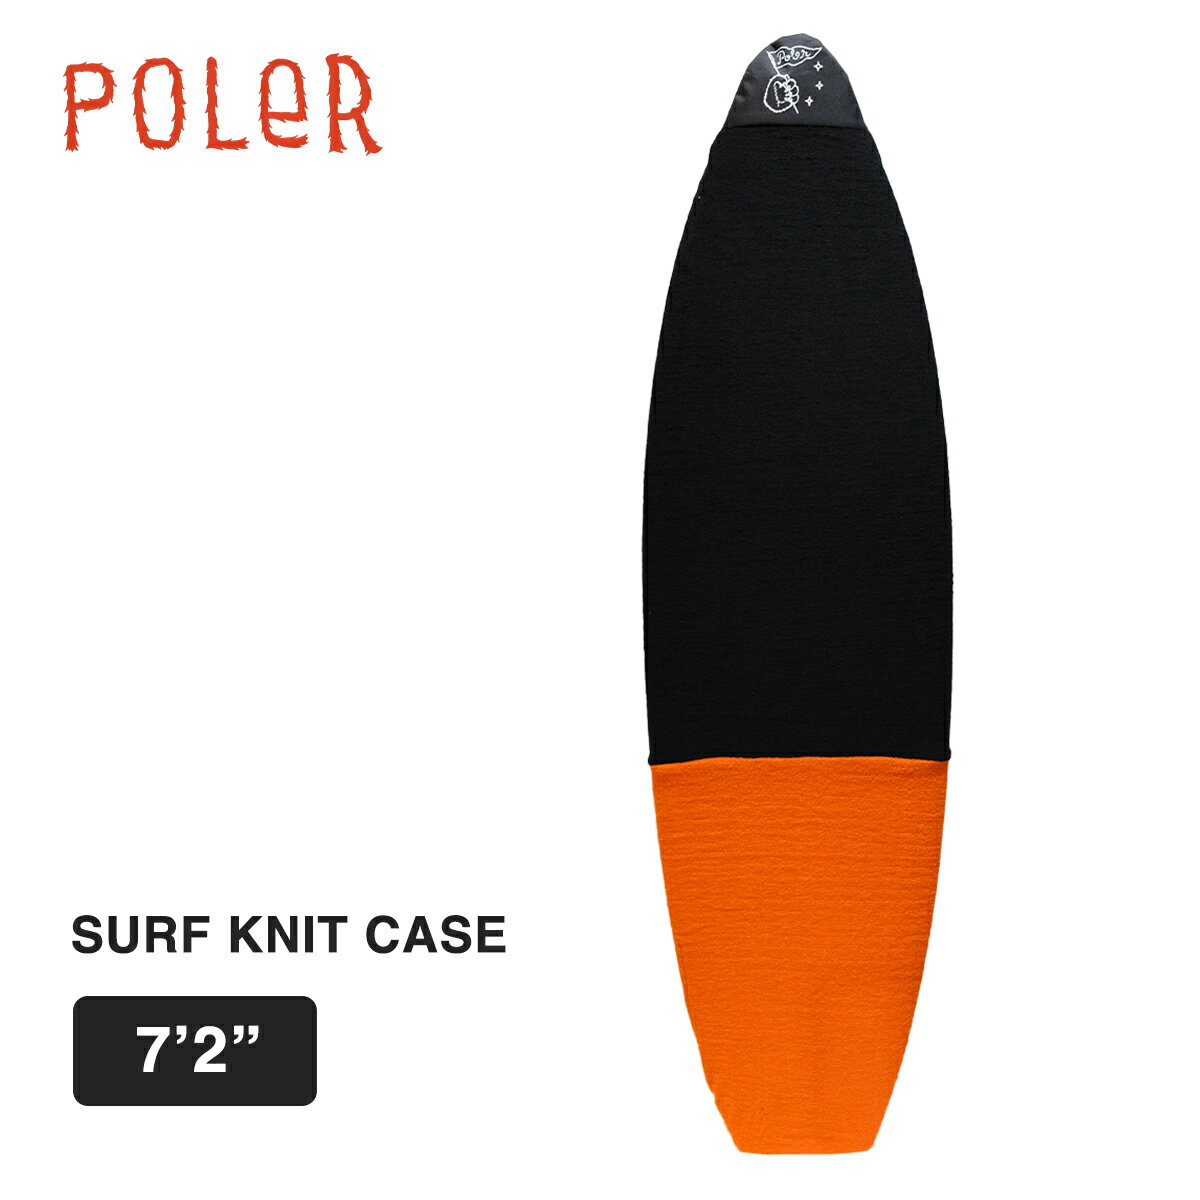 ■ポーラー サーフボードニットケース POLER SURF BOARD CASE 7'2 BLACK/ORANGE 【カラー】BLACK/ORANGE（ブラック/オレンジ） 【サイズ】 7'2"(218.4cm) ※218.4cmくらいのボードに丁度いいサイズ感です。伸縮性がある素材を使っていますが、あくまで目安とお考え下さい。 ニット地のサーフボードケース。フィンを付けたままでも穴が開かないように裏側にナイロンの別布があてがわれているほか、ドローコードで縛って持ち運びもできる優れもの。紫外線による日焼けや劣化対策にも◎。 ■注意点 ◆画面上と実物では多少色具合が変わって見える場合もあります。ご了承ください。 ◆この商品は当店実店舗でも販売しております。 在庫数の更新は随時行っておりますが、お買い上げいただいた商品が、品切れになってしまうこともございます。 その場合、お客様には必ず連絡をいたしますが、万が一入荷予定がない場合は、 キャンセルさせていただく場合もございます。 あらかじめご了承ください。 ＊AIN＊メーカー希望小売価格はメーカーカタログに基づいて掲載しています。